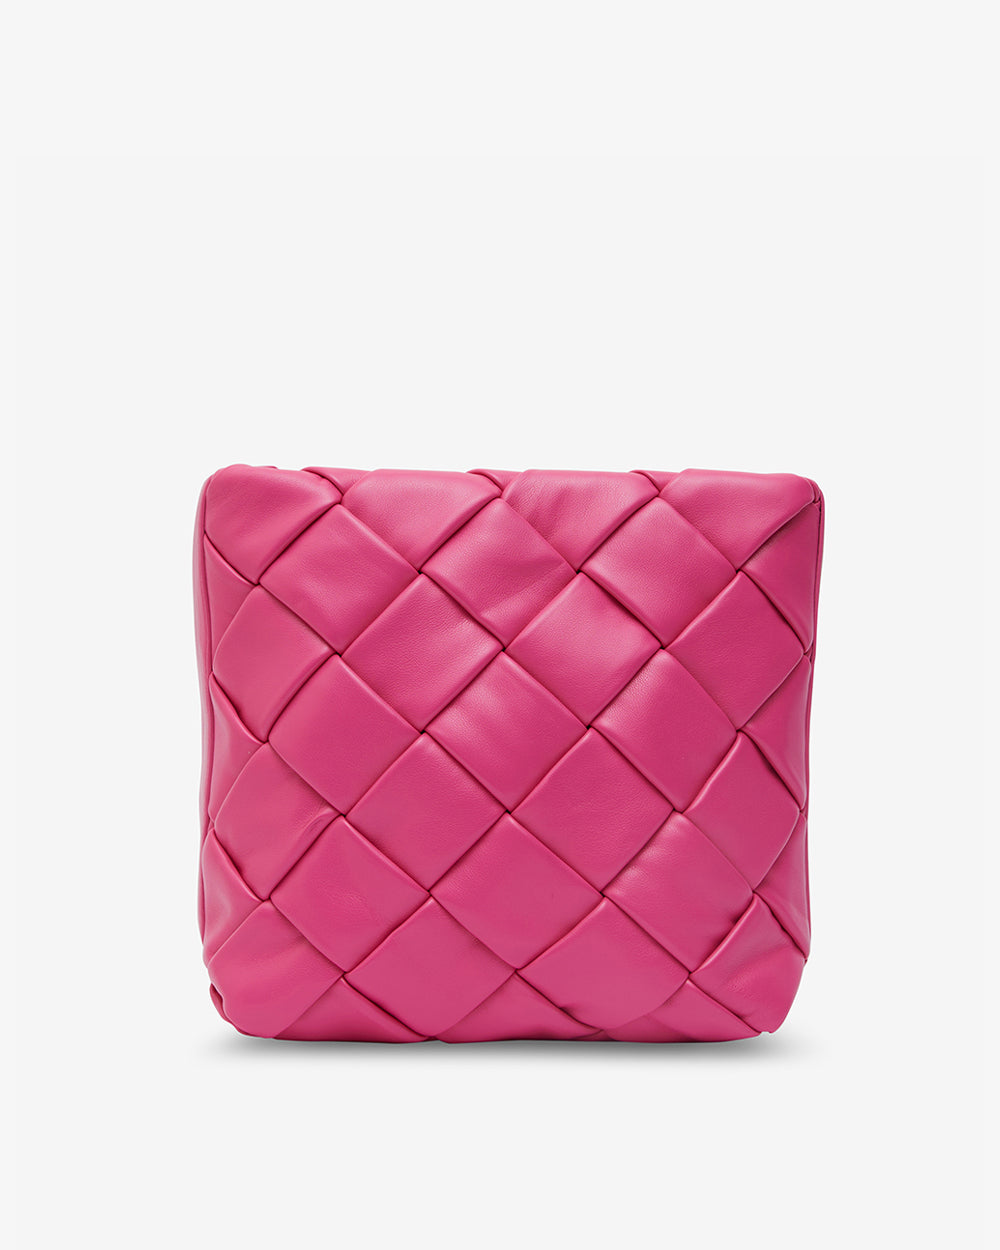 Apollo Bag - Hot Pink